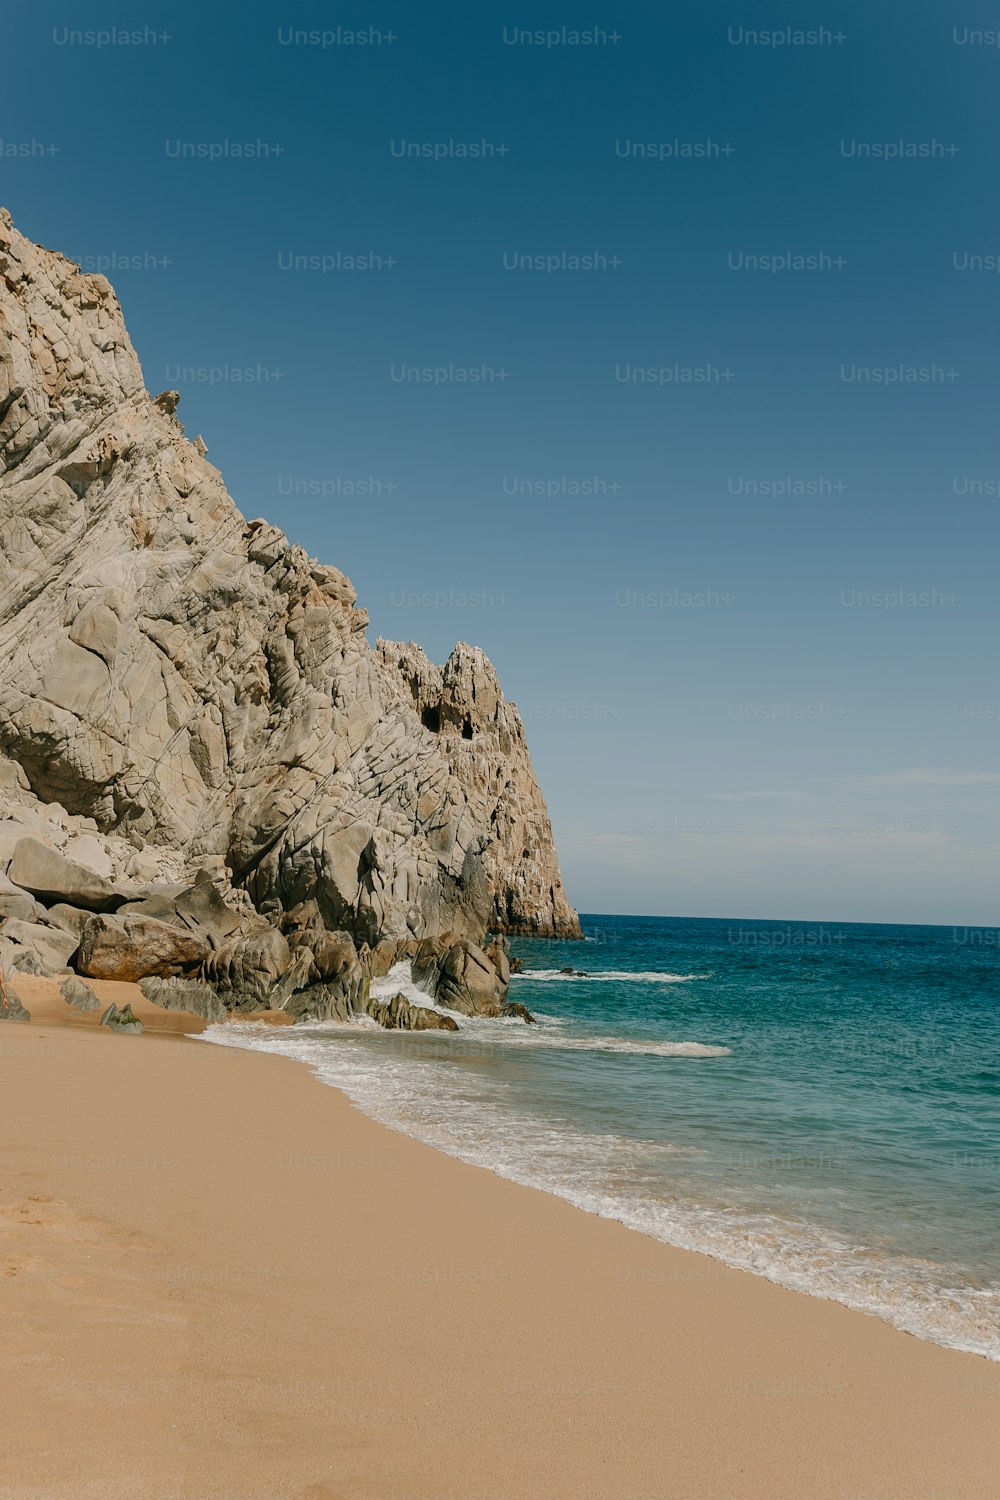 una playa de arena junto a un acantilado rocoso